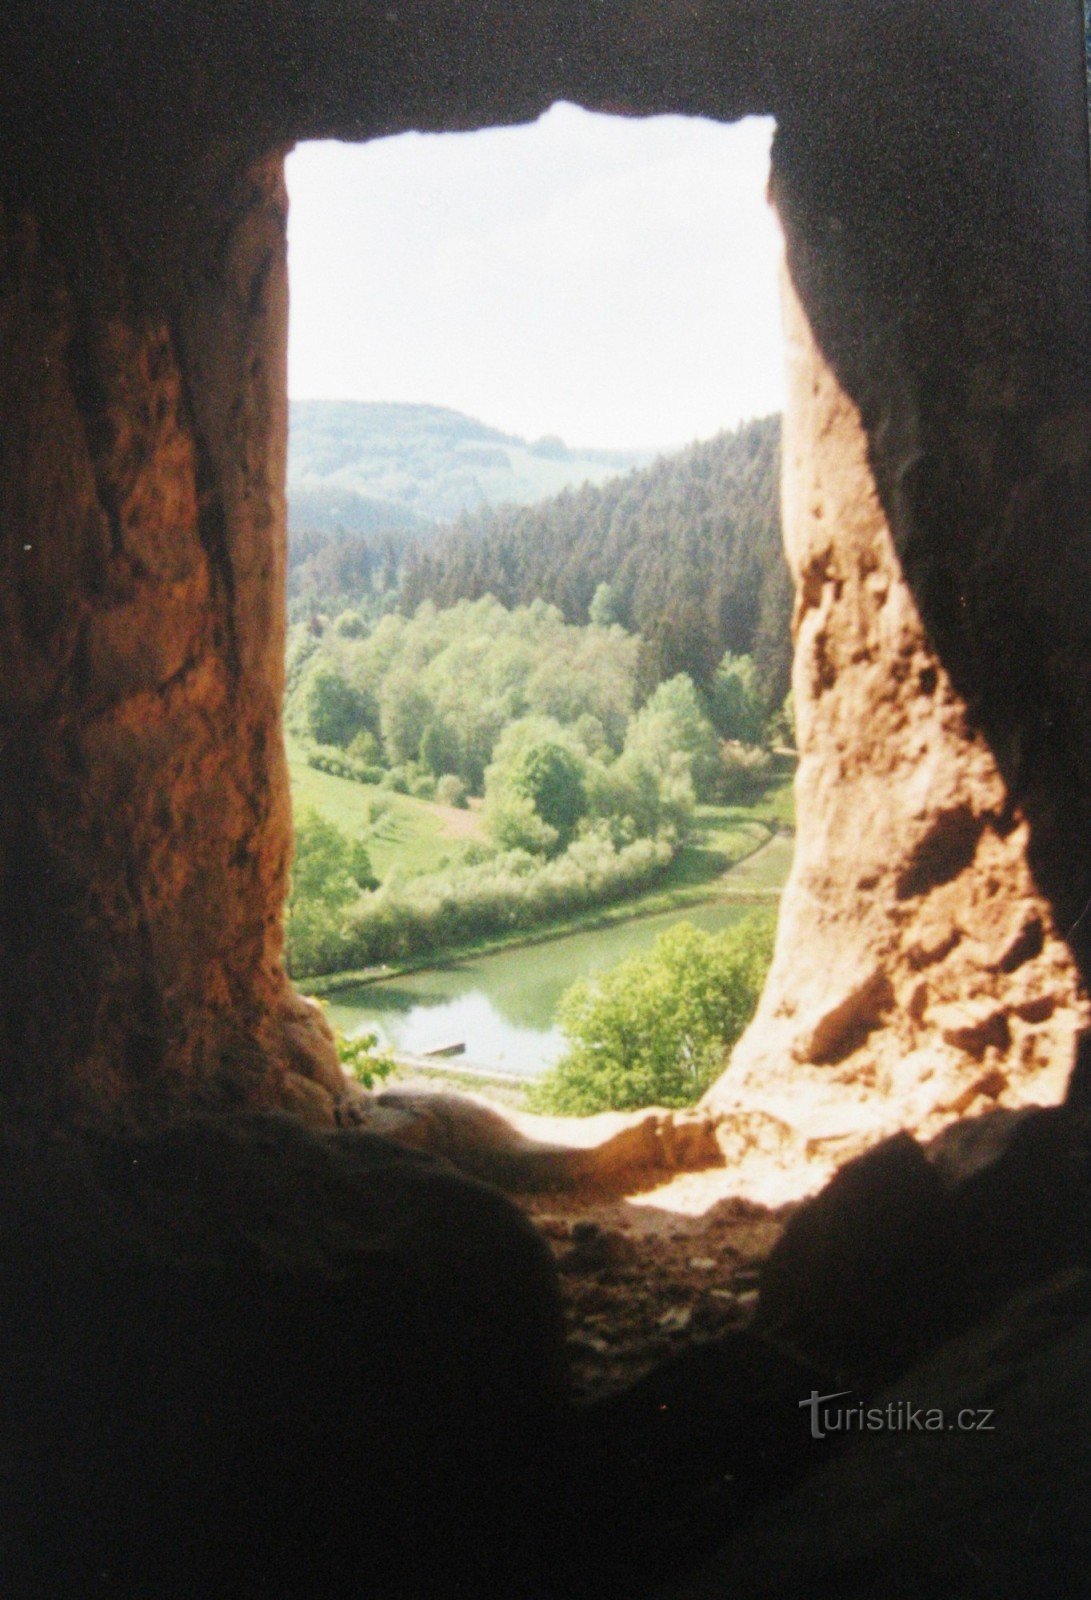 Θέα από το κάστρο